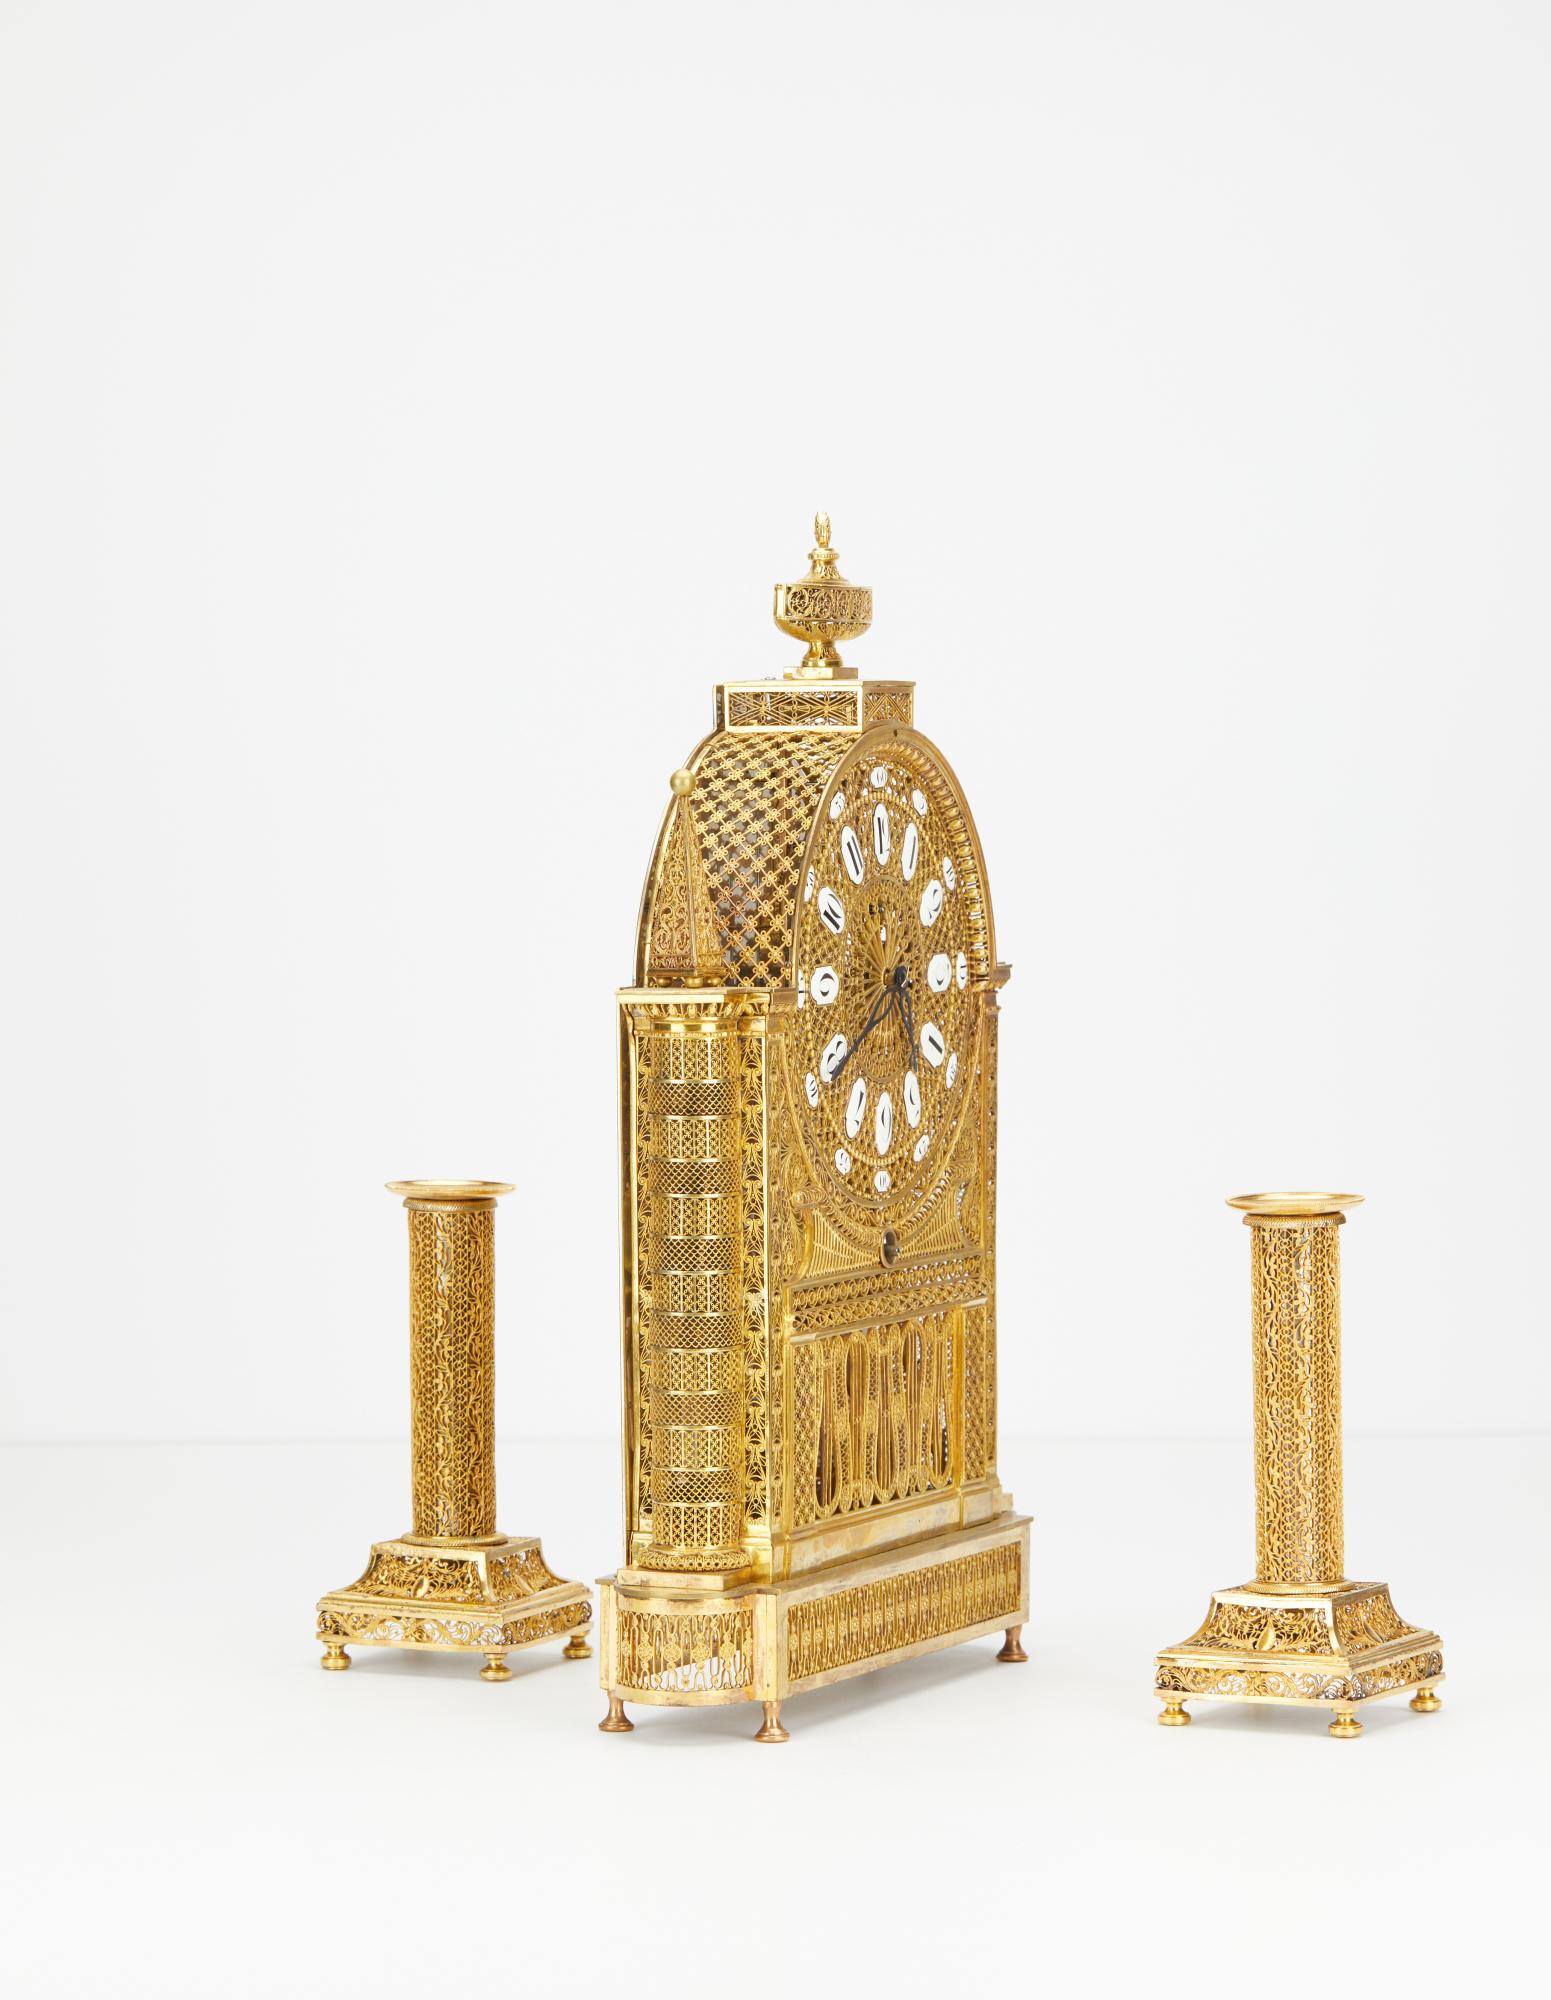 L'ensemble comprend une horloge squelette en bronze doré de style Arabesque, ainsi que les chandeliers d'origine en bronze doré assortis. L'horloge repose fièrement sur quatre pieds et une base filigranée. Le cadran Arabesque très détaillé comporte